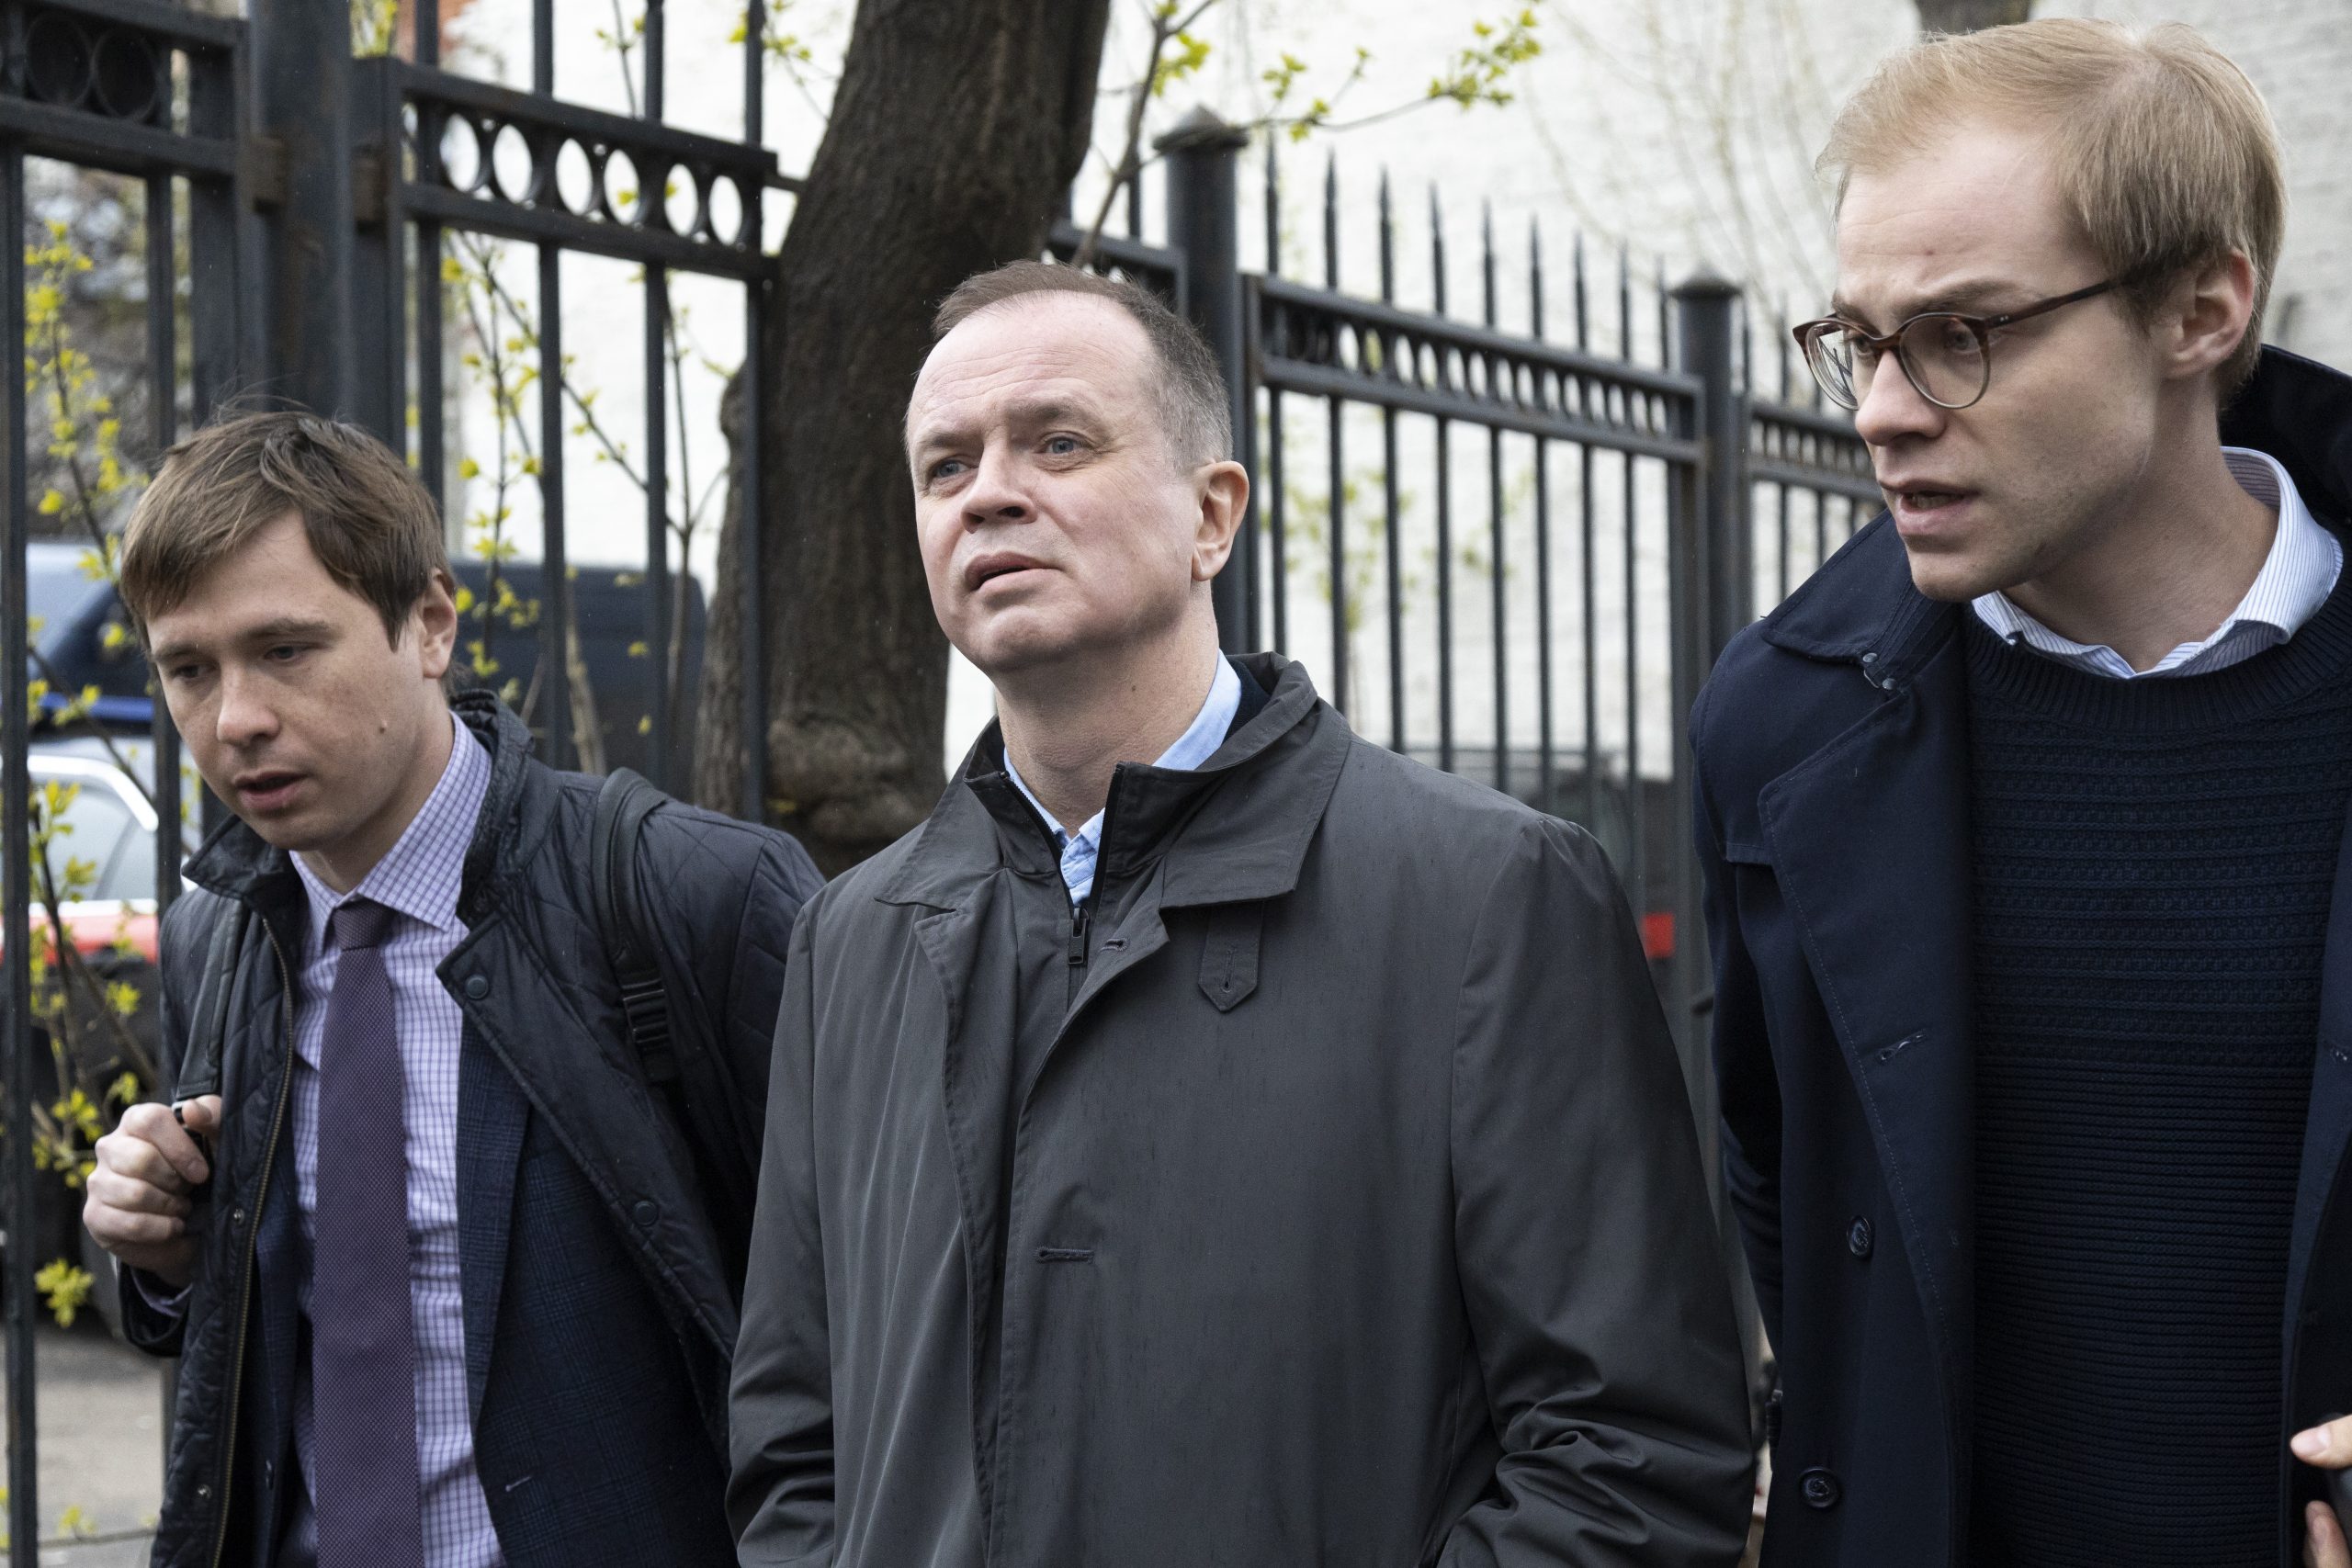 Ruske vlasti otvorile istragu protiv advokata koji zastupa bivšeg novinara i tim Navaljnog 1